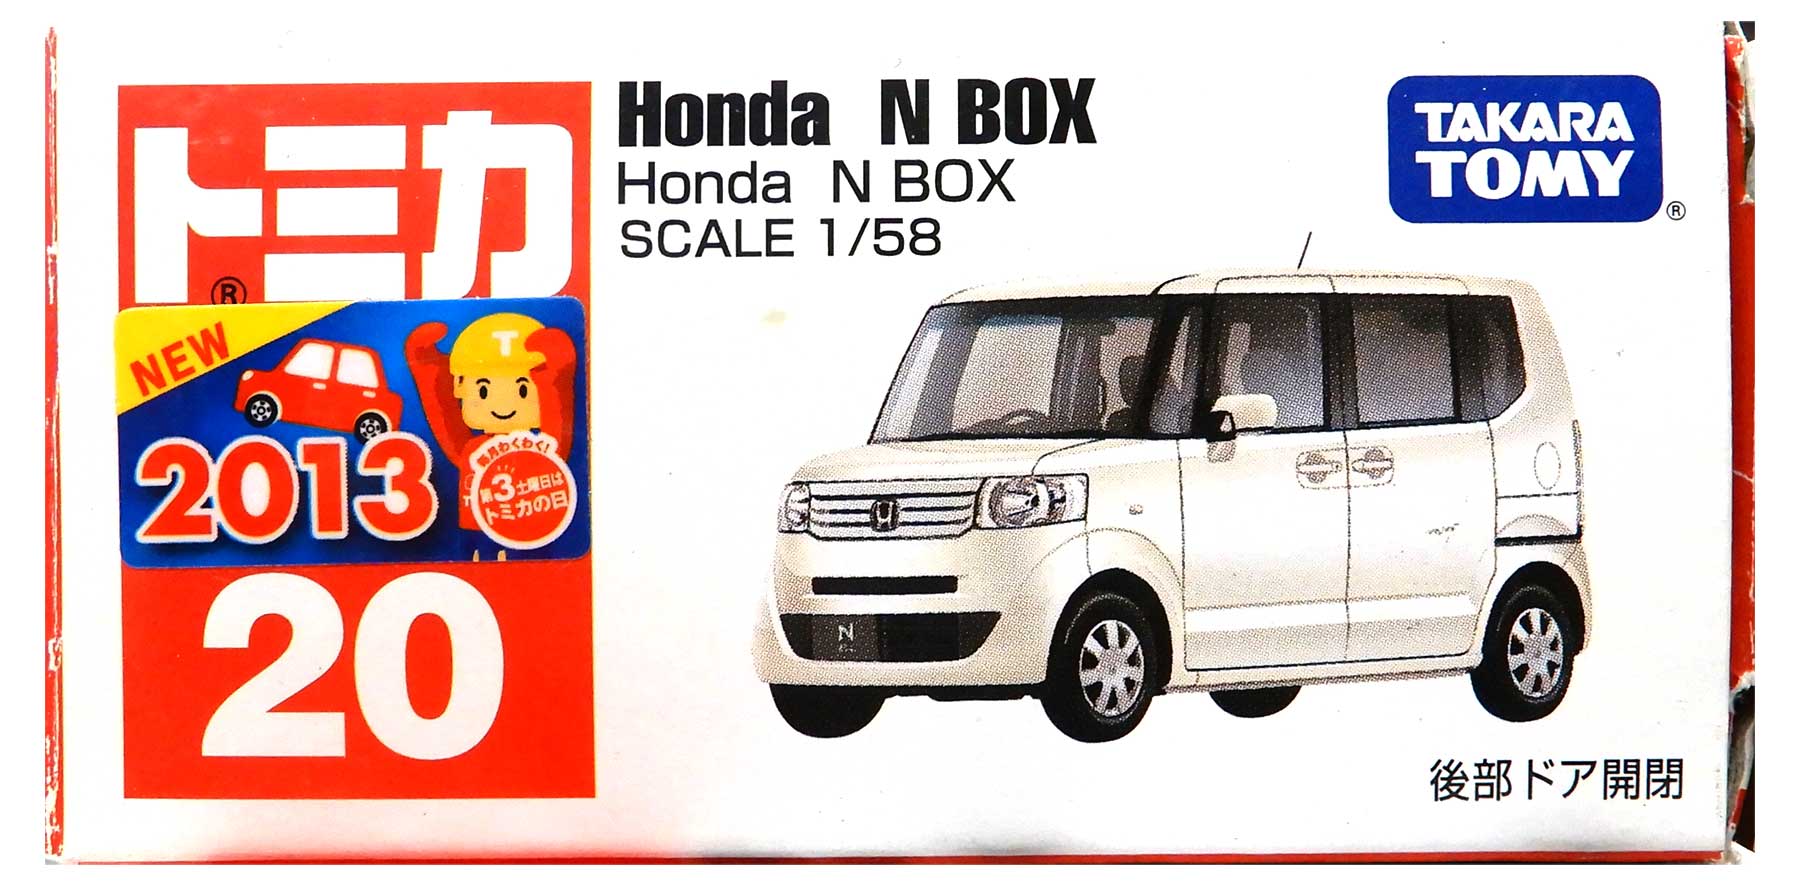 【中古】1/58 タカラトミー トミカ No.20 Honda N BOX 【B】 外箱傷み / 性質上、多少の塗装ムラ等はご容赦ください。